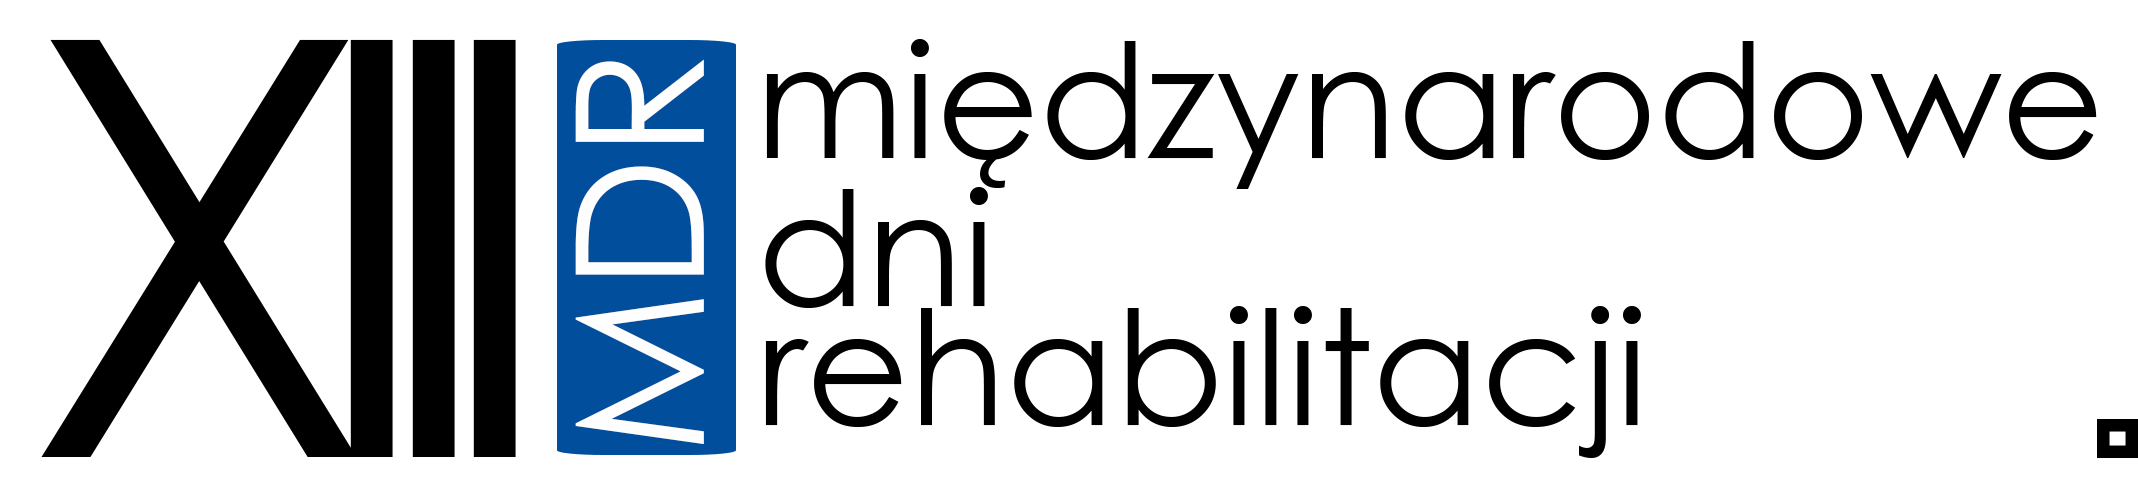 logo mdrxiii.png [62.20 KB]